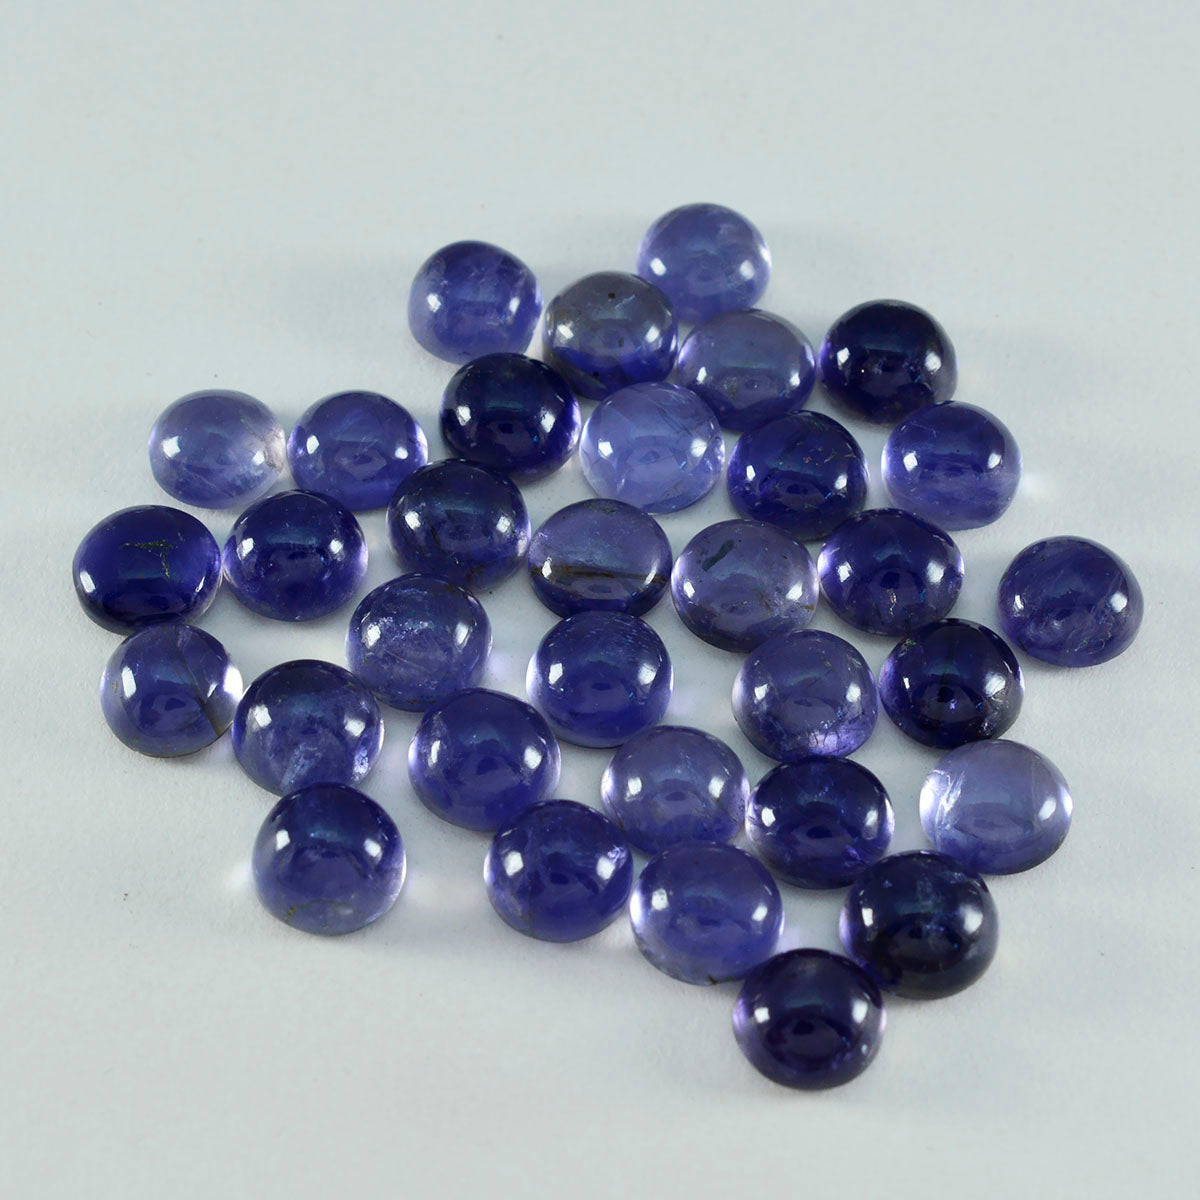 Riyogems 1PC blauwe ioliet cabochon 8x8 mm ronde vorm A+1 kwaliteit losse edelstenen